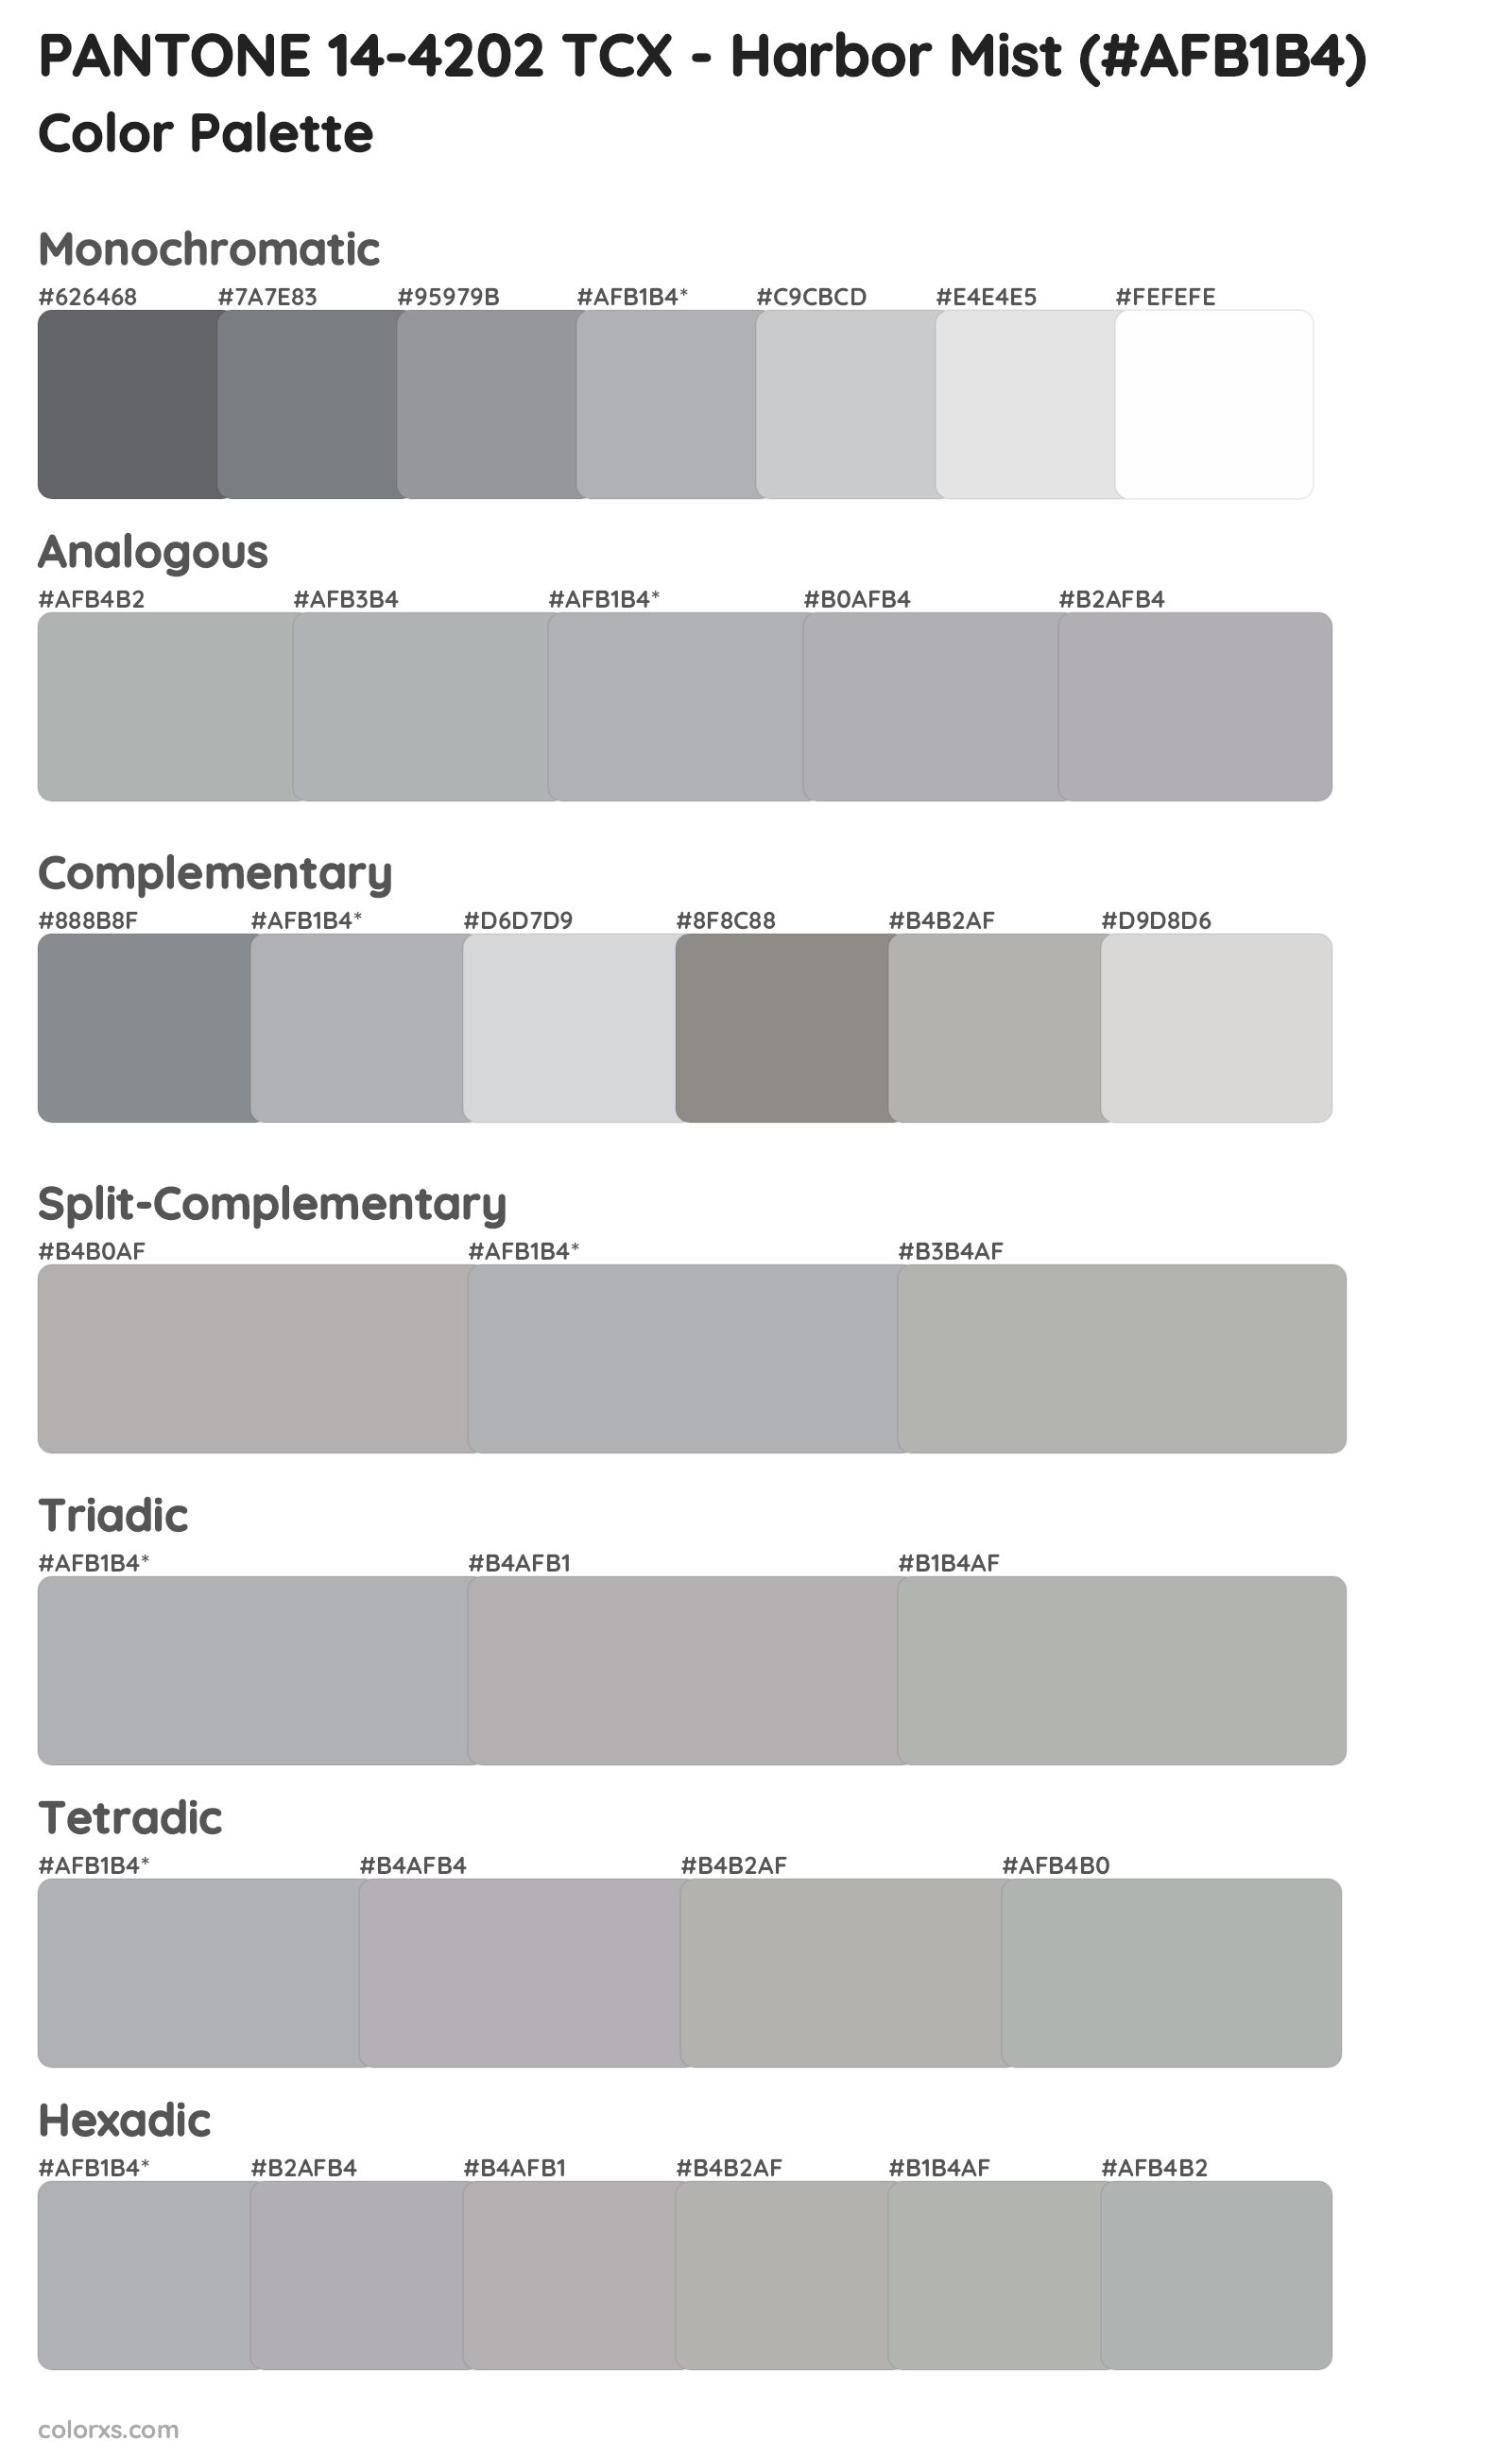 PANTONE 14-4202 TCX - Harbor Mist Color Scheme Palettes